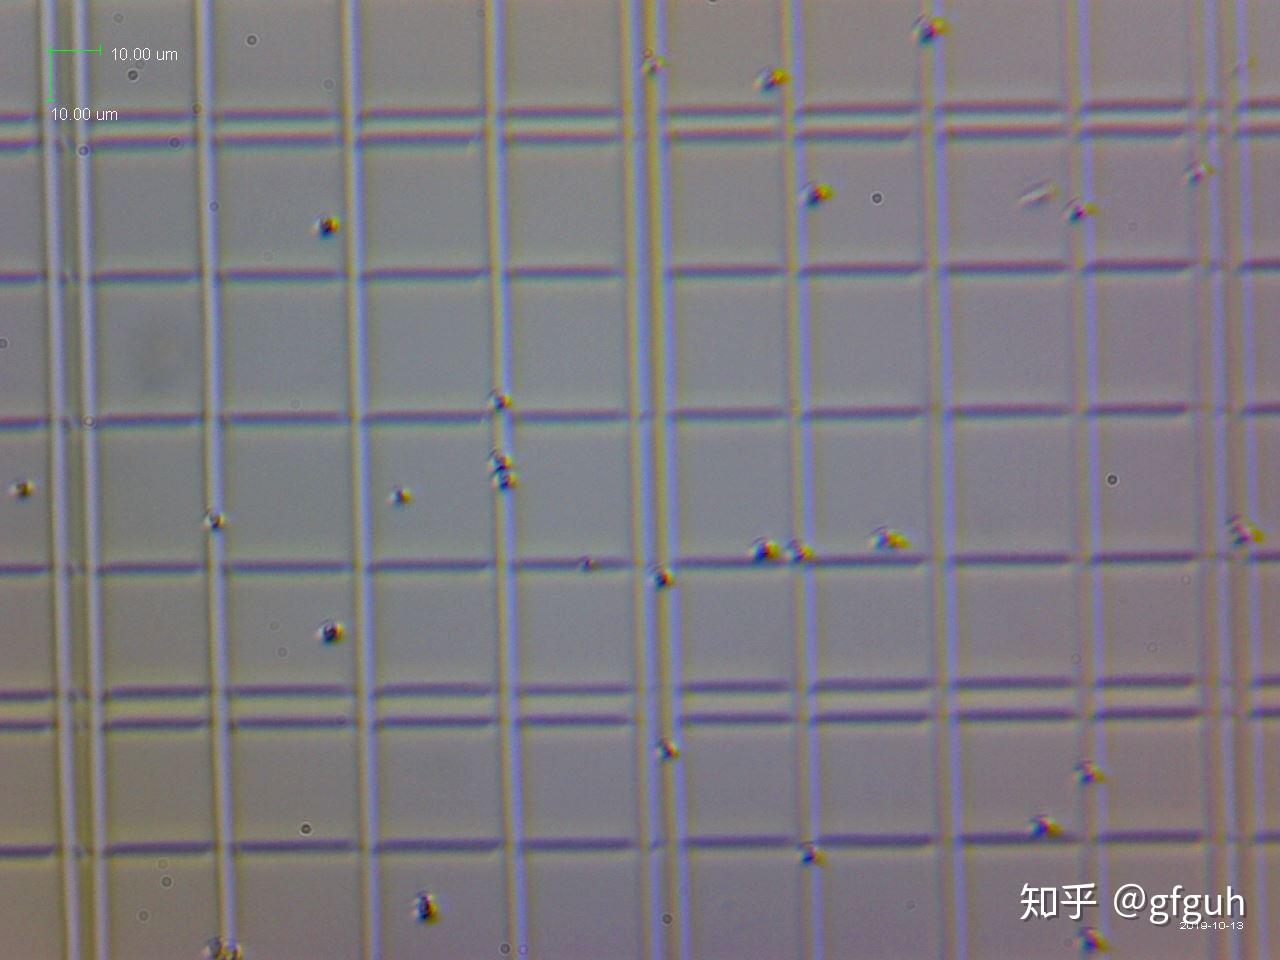 毕赤酵母菌中国基因工程再飞跃 福隆集团重磅呈现天花板级胶原蛋白- 医美行业观察